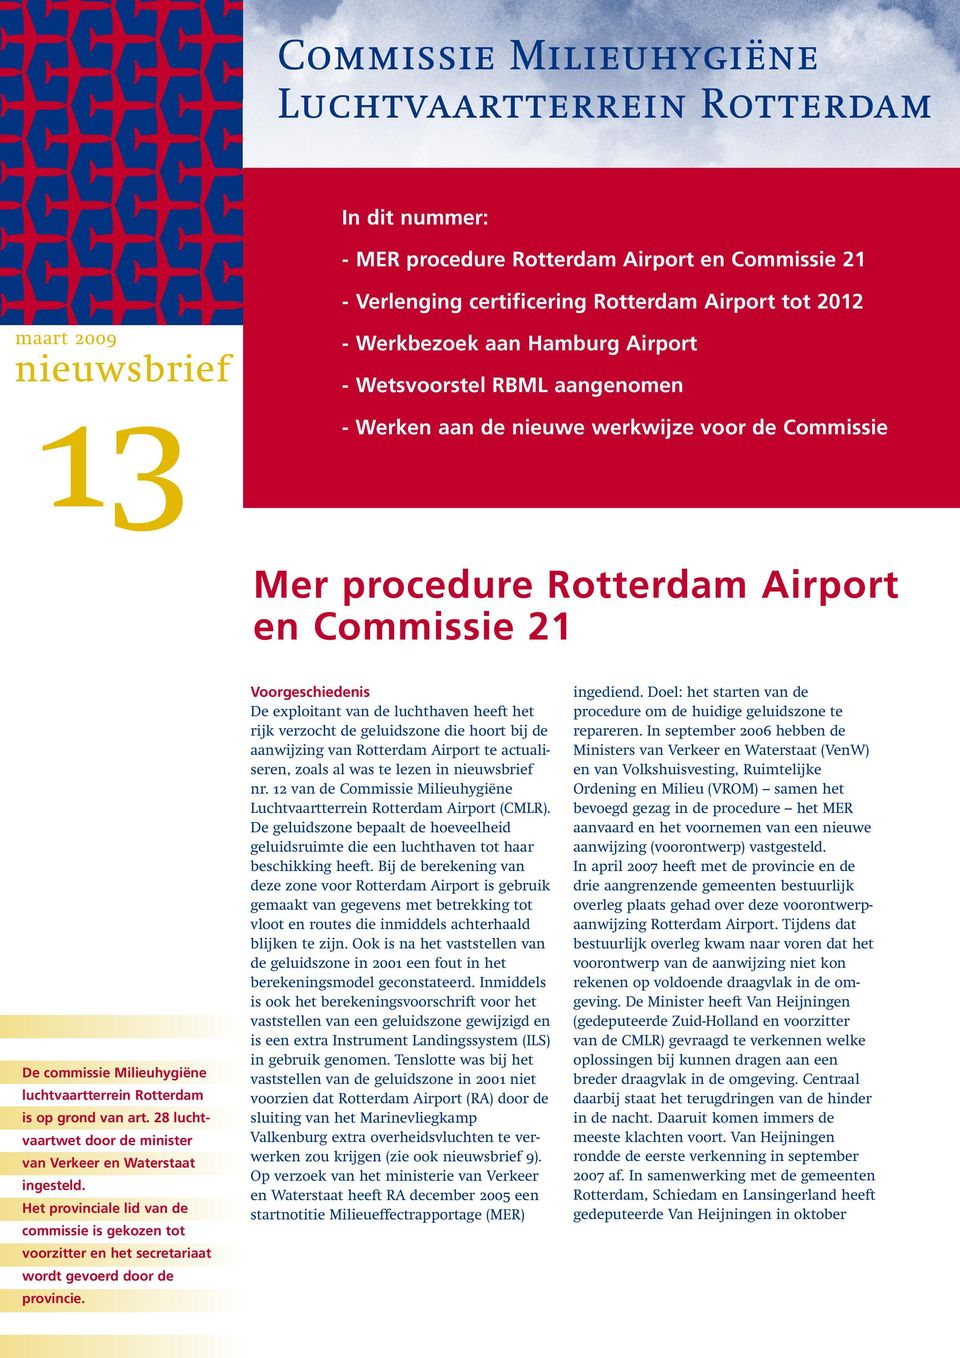 luchtvaartterrein Rotterdam is op grond van art. 28 luchtvaartwet door de minister van Verkeer en Waterstaat ingesteld.